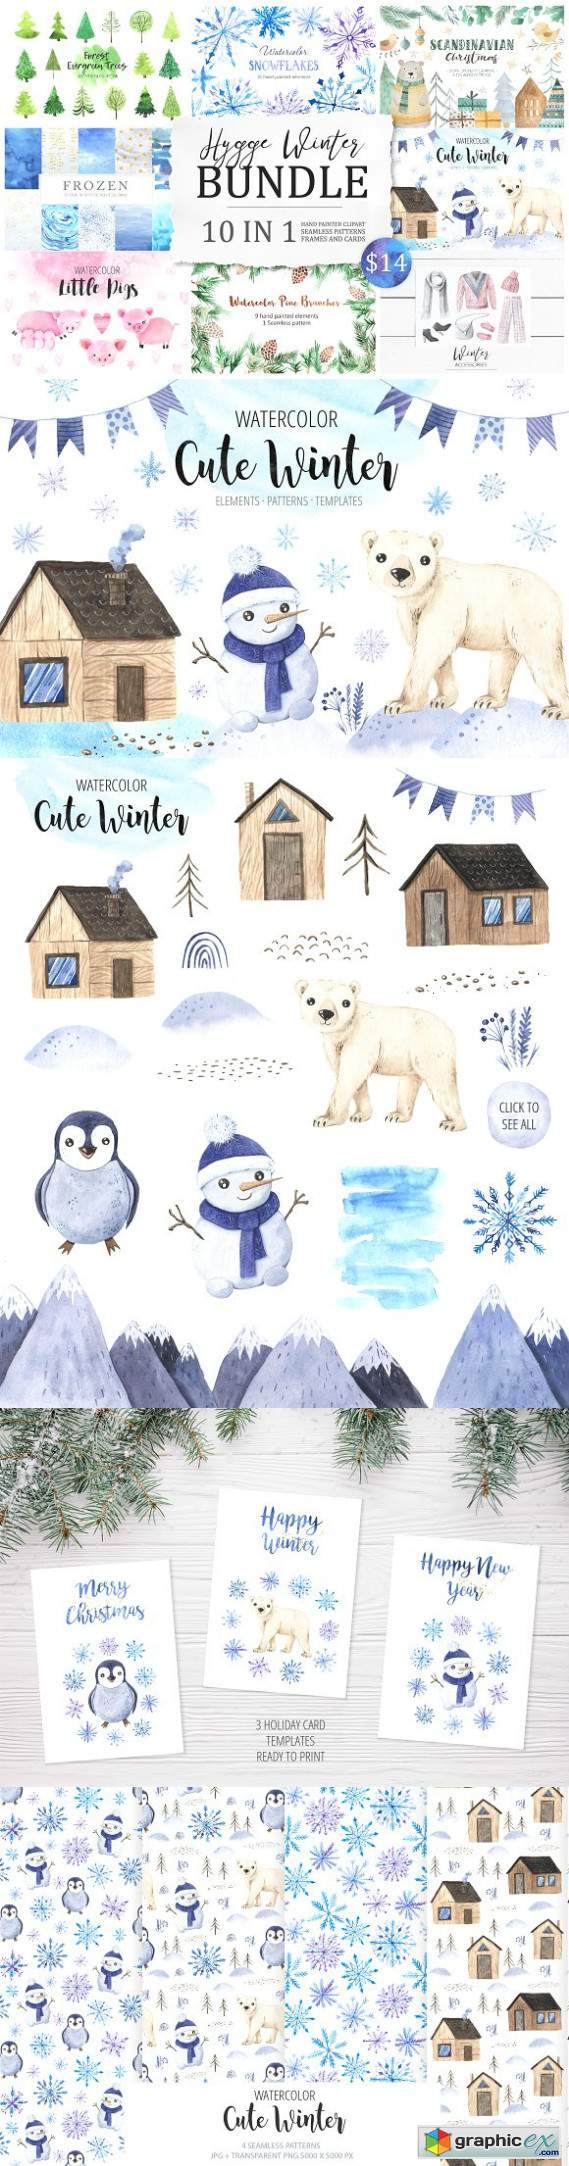 BUNDLE Winter Hygge Watercolor Kit